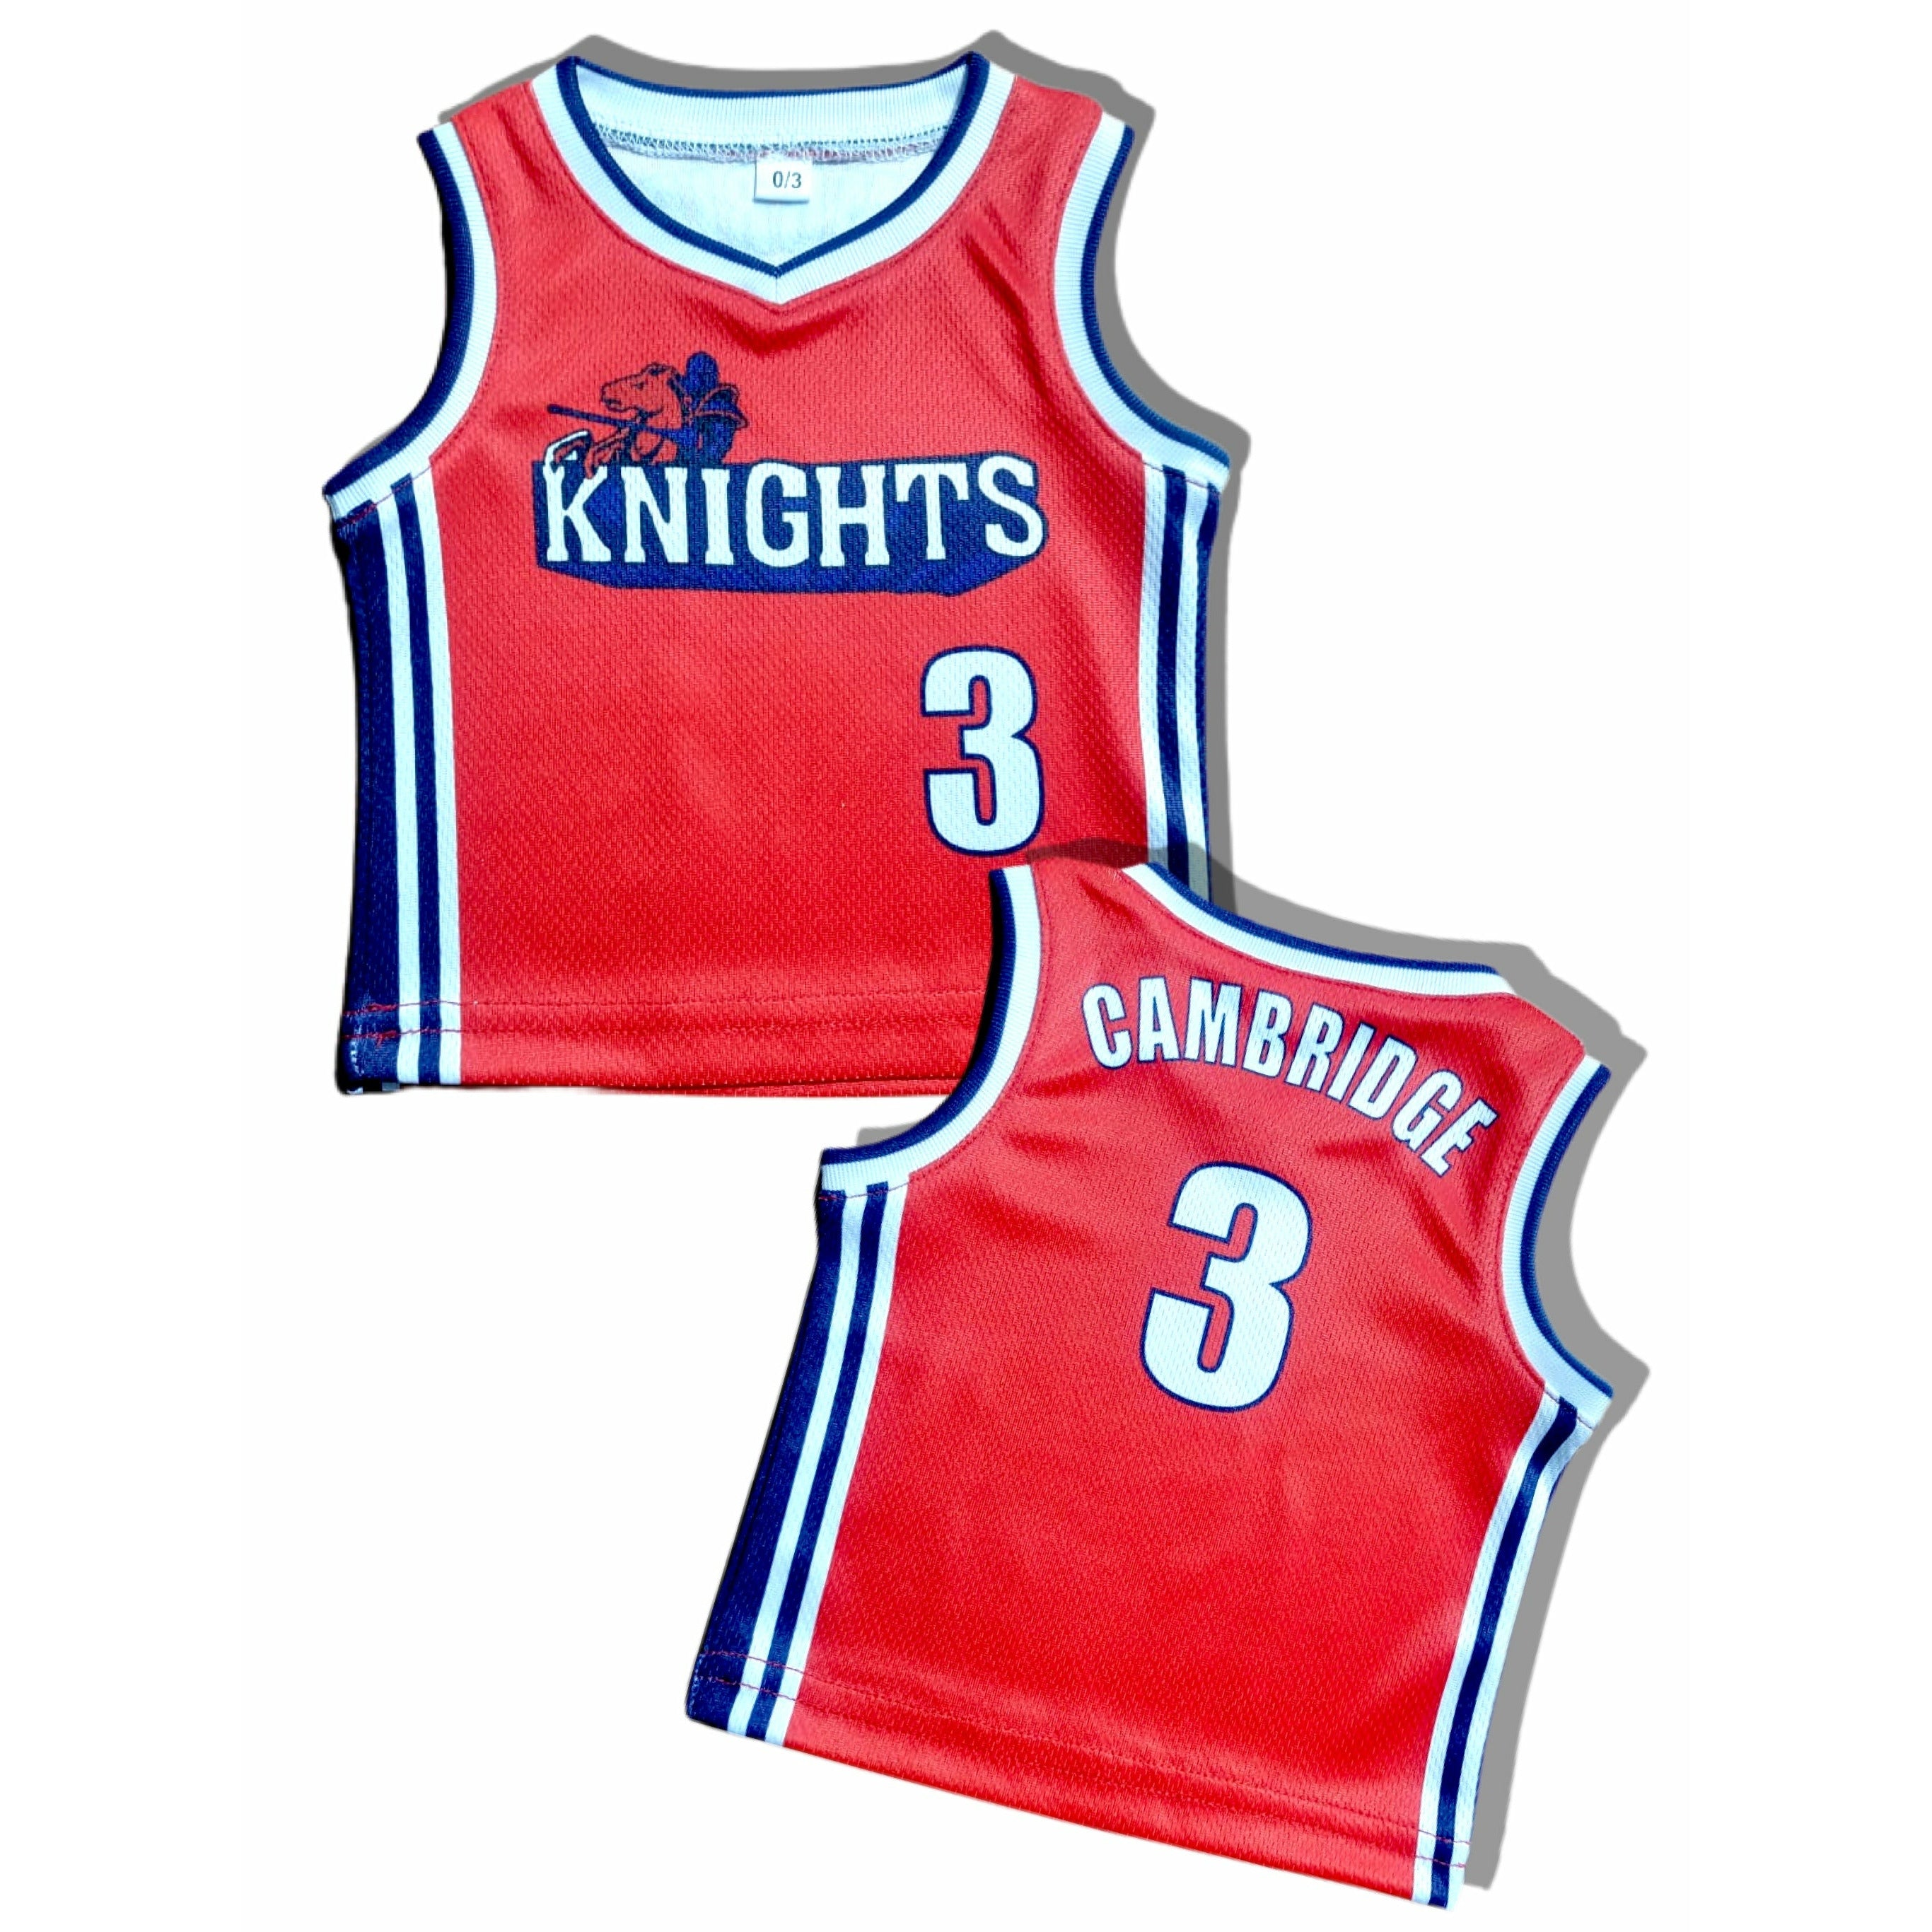 Knights Kids Basketball Jersey